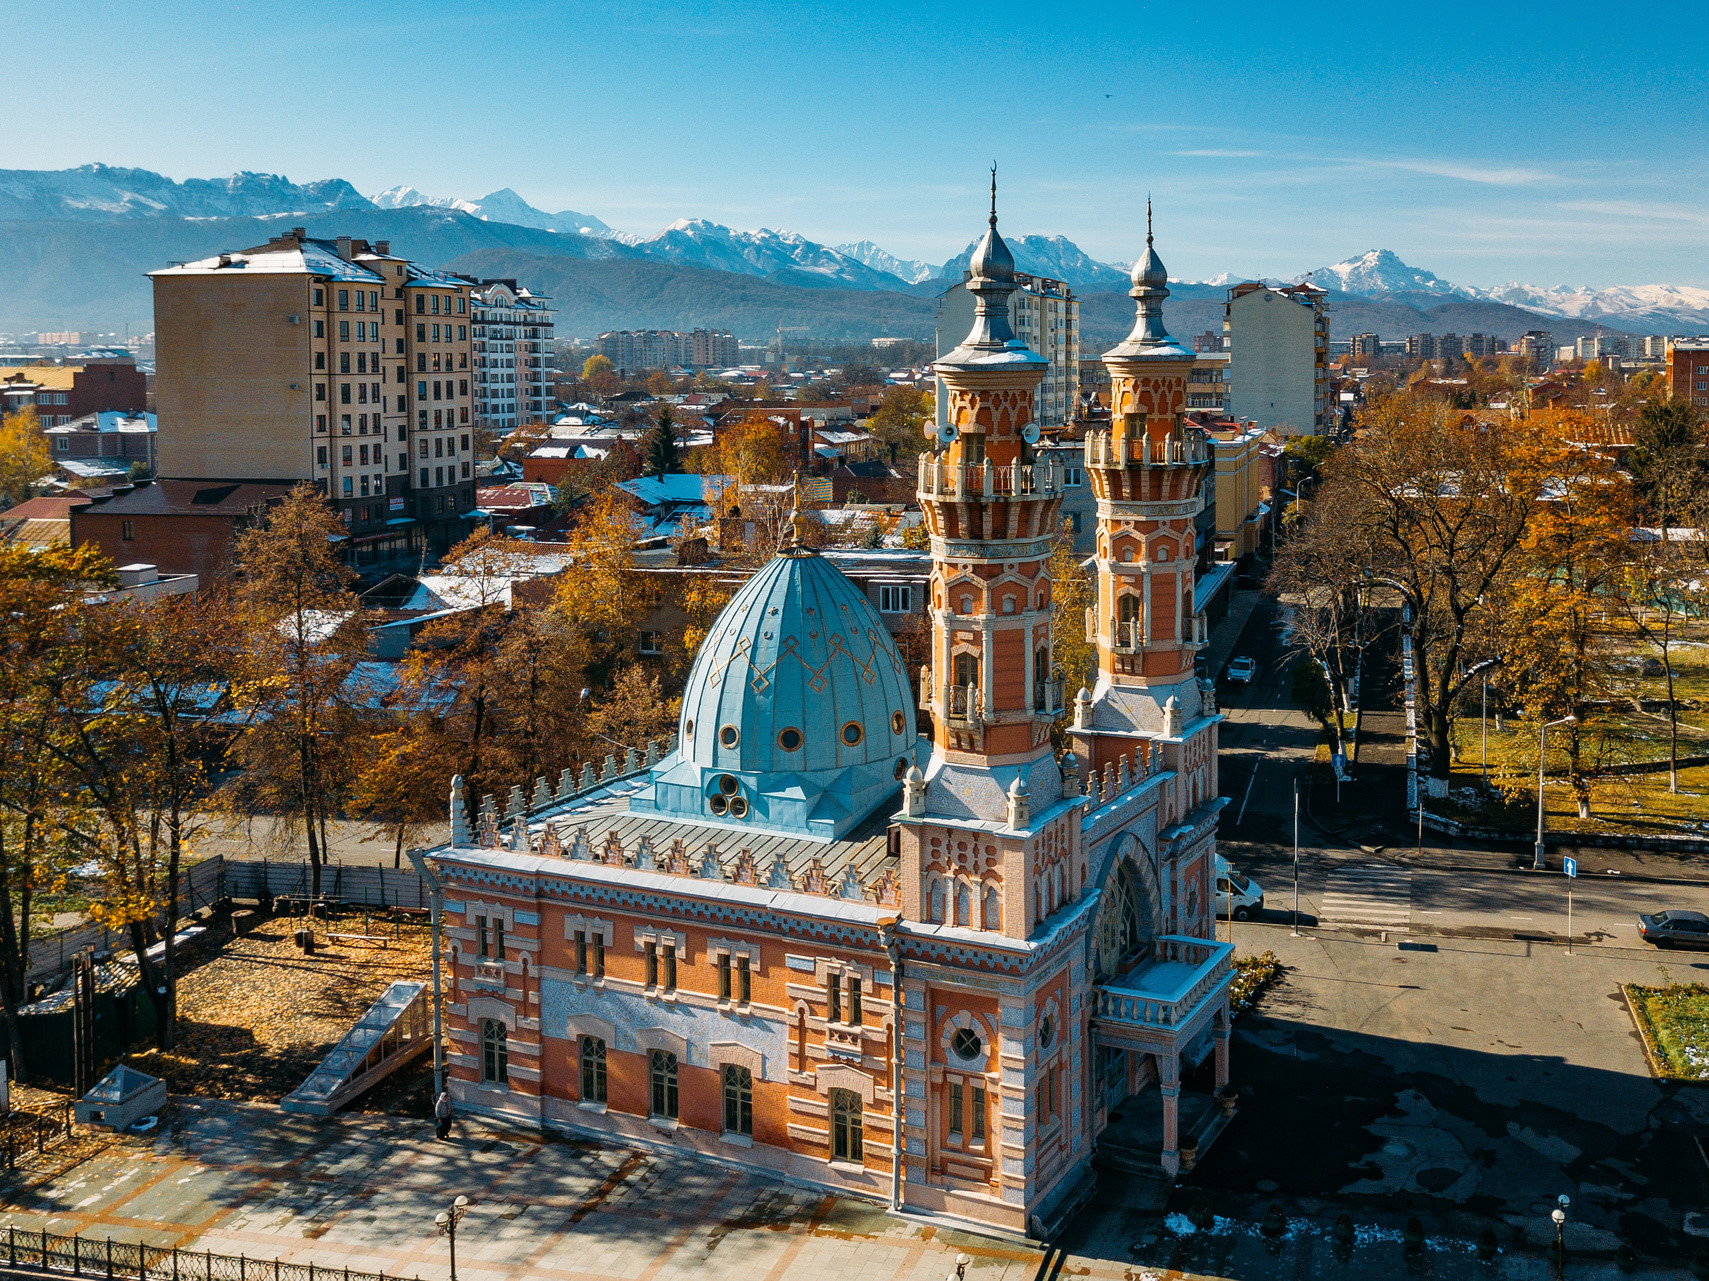 Osetya'nın başkenti Vladikavkaz'da, Kafkas Sıradağlarına arkasını dayayan ve Terek Nehri'nin kıyısına inşa edilen Muhtarov Camii.